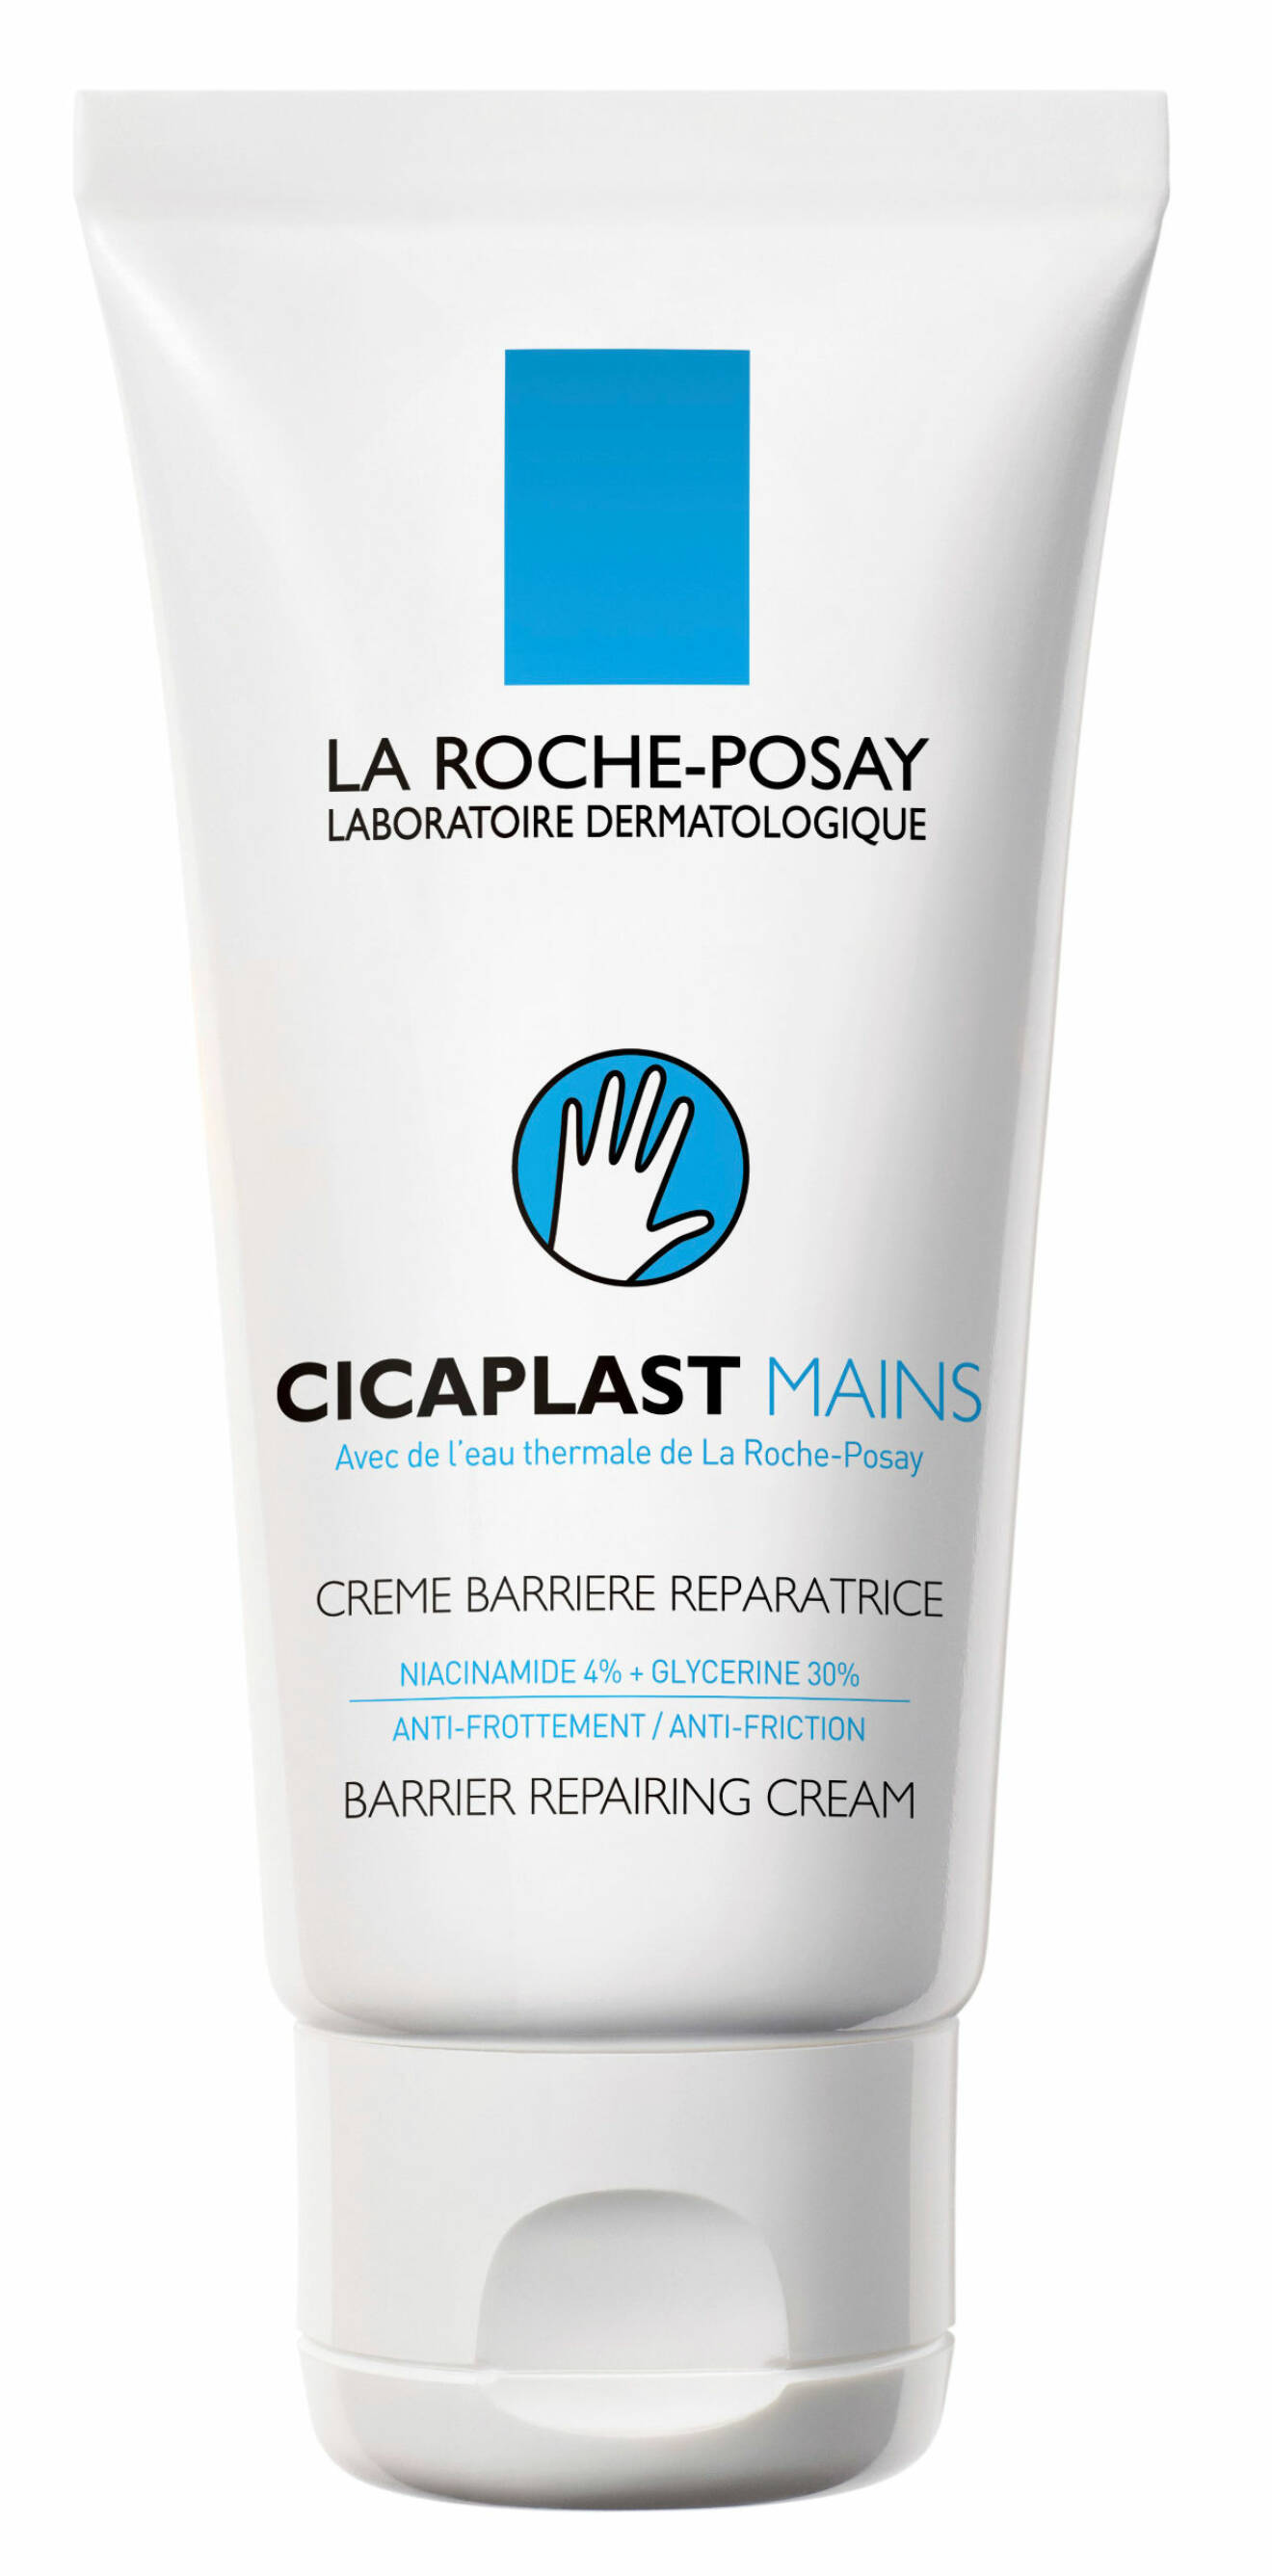 Cicaplast Mains, La Roche-Posay